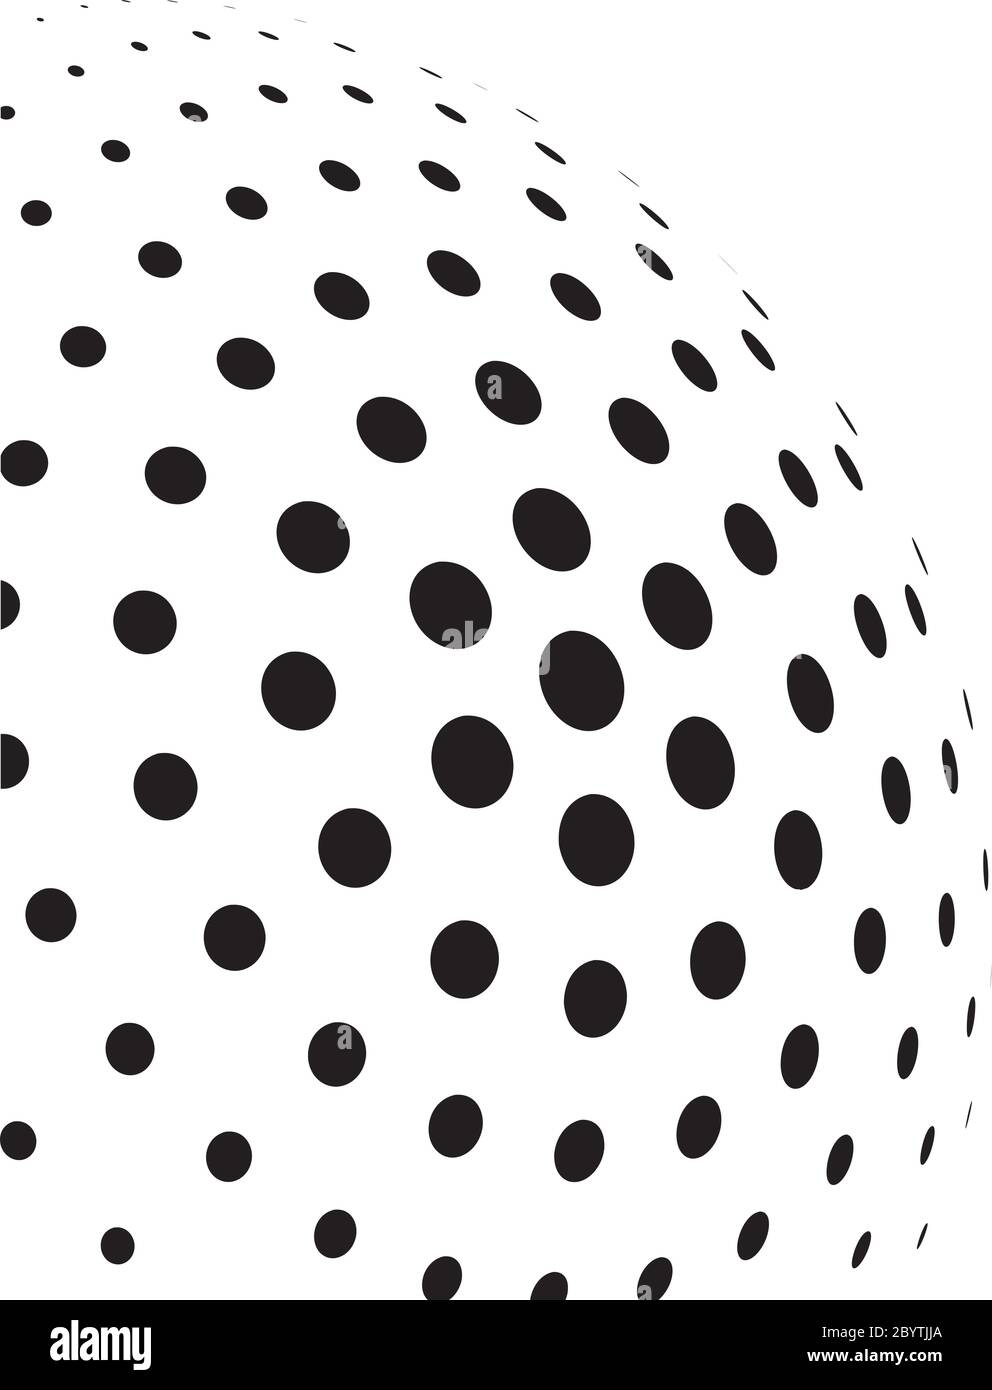 Sphère 3D demi-teinte abstraite de points de cercle dans une disposition radiale. Élément vectoriel simple et moderne en noir et blanc. Illustration de Vecteur